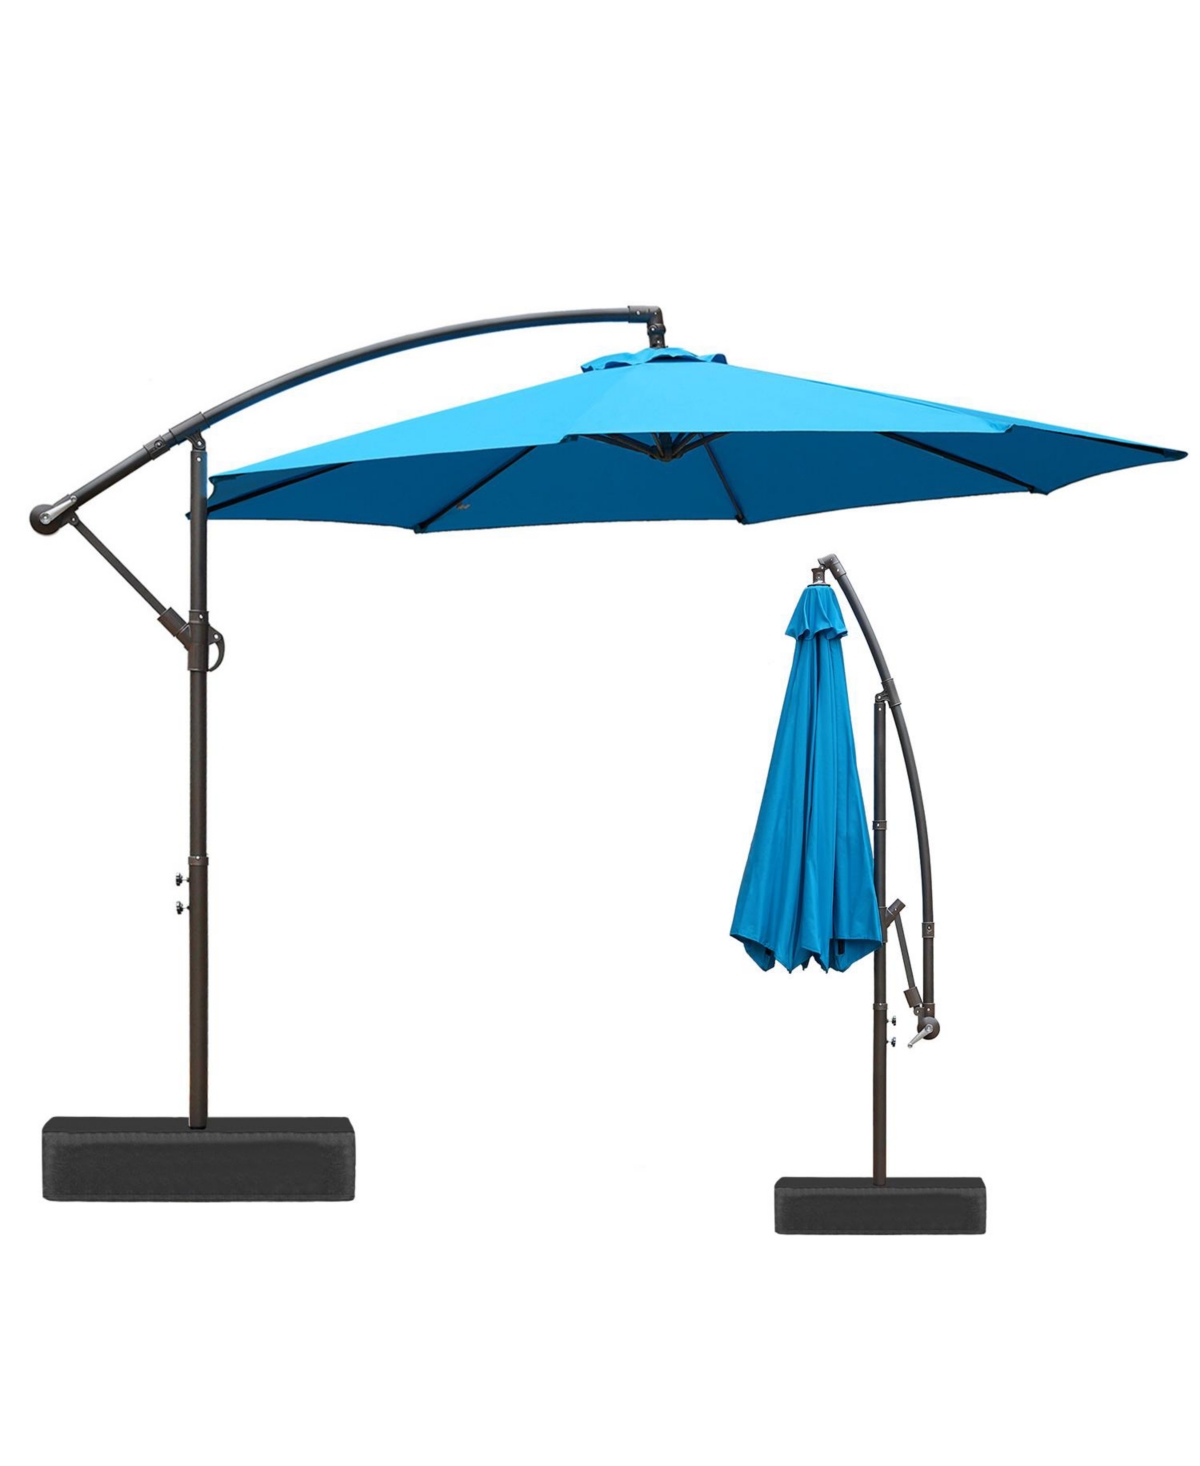 Patio Off-set Hanging Umbrella 10FT Aluminum Cantilever Umbrella - Brown